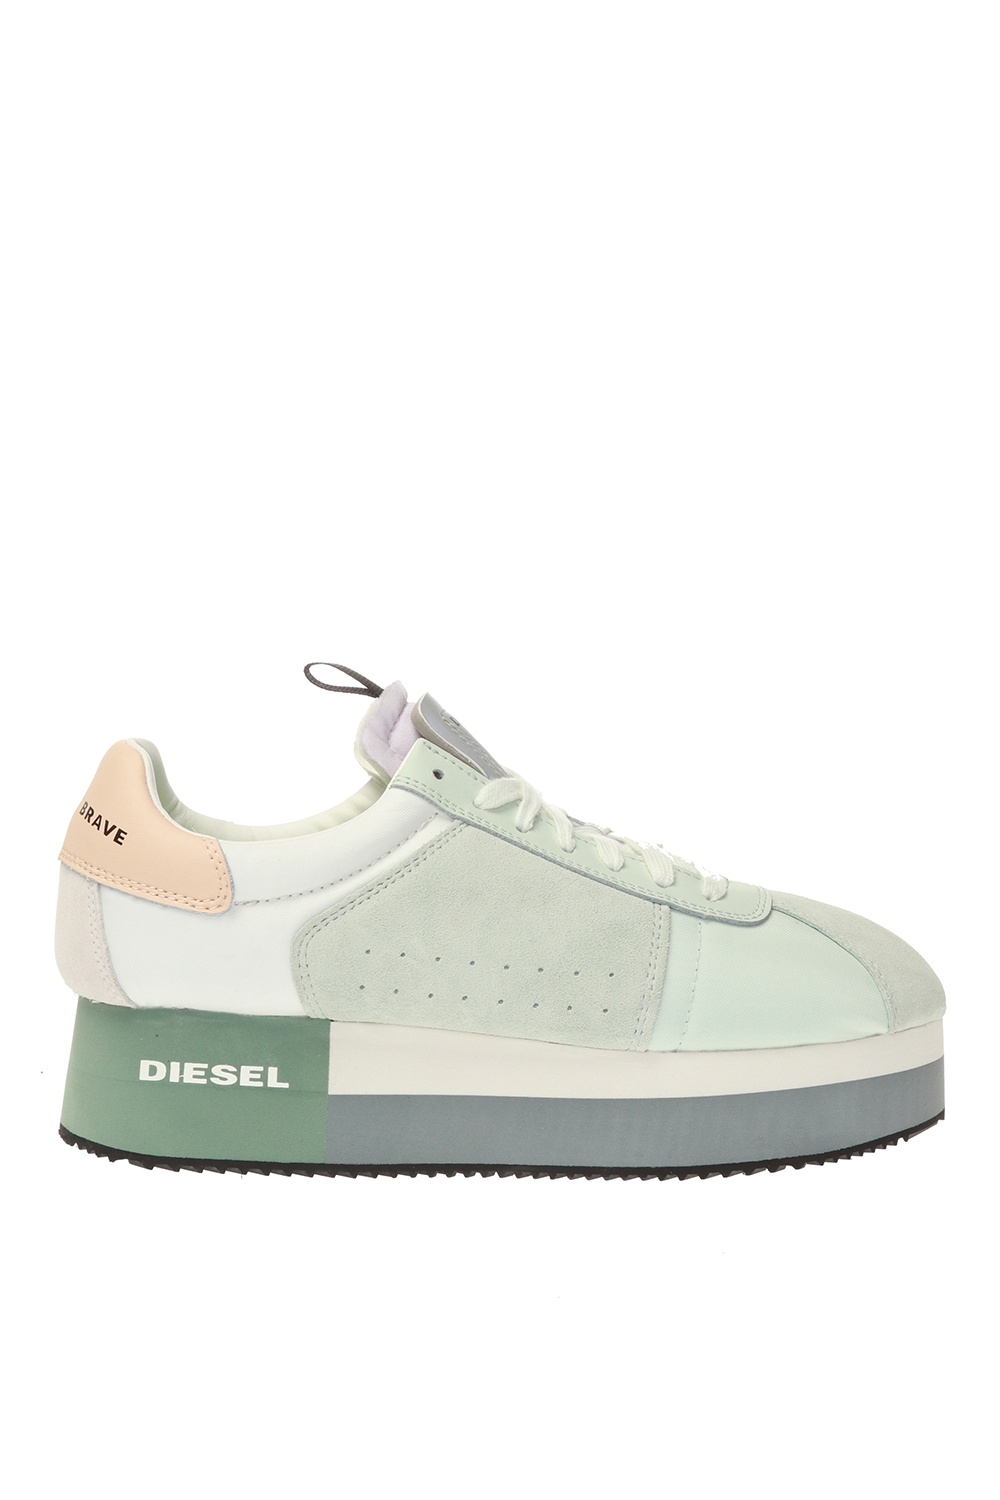 diesel sneakers canada